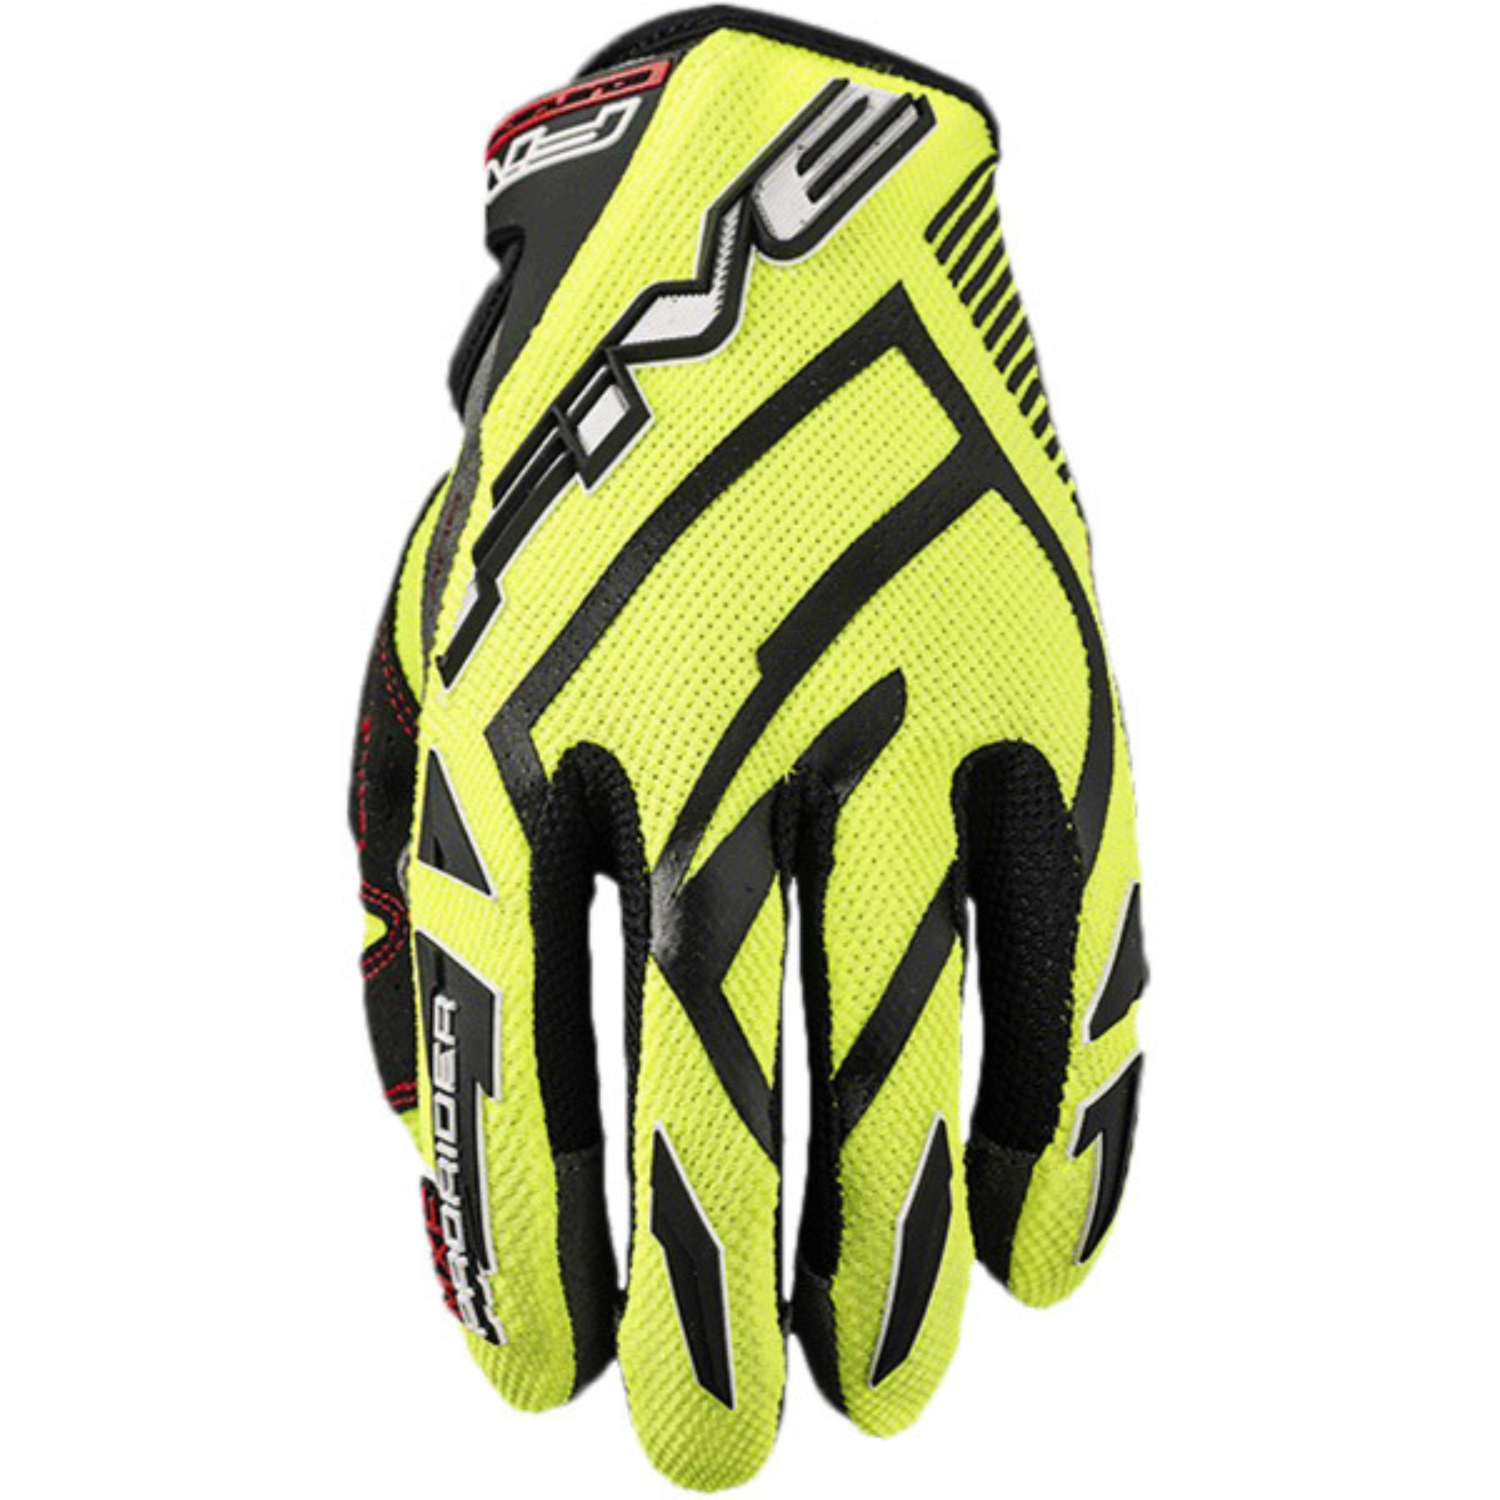 Image of Five MXF Prorider S Gloves Black Yellow Talla L